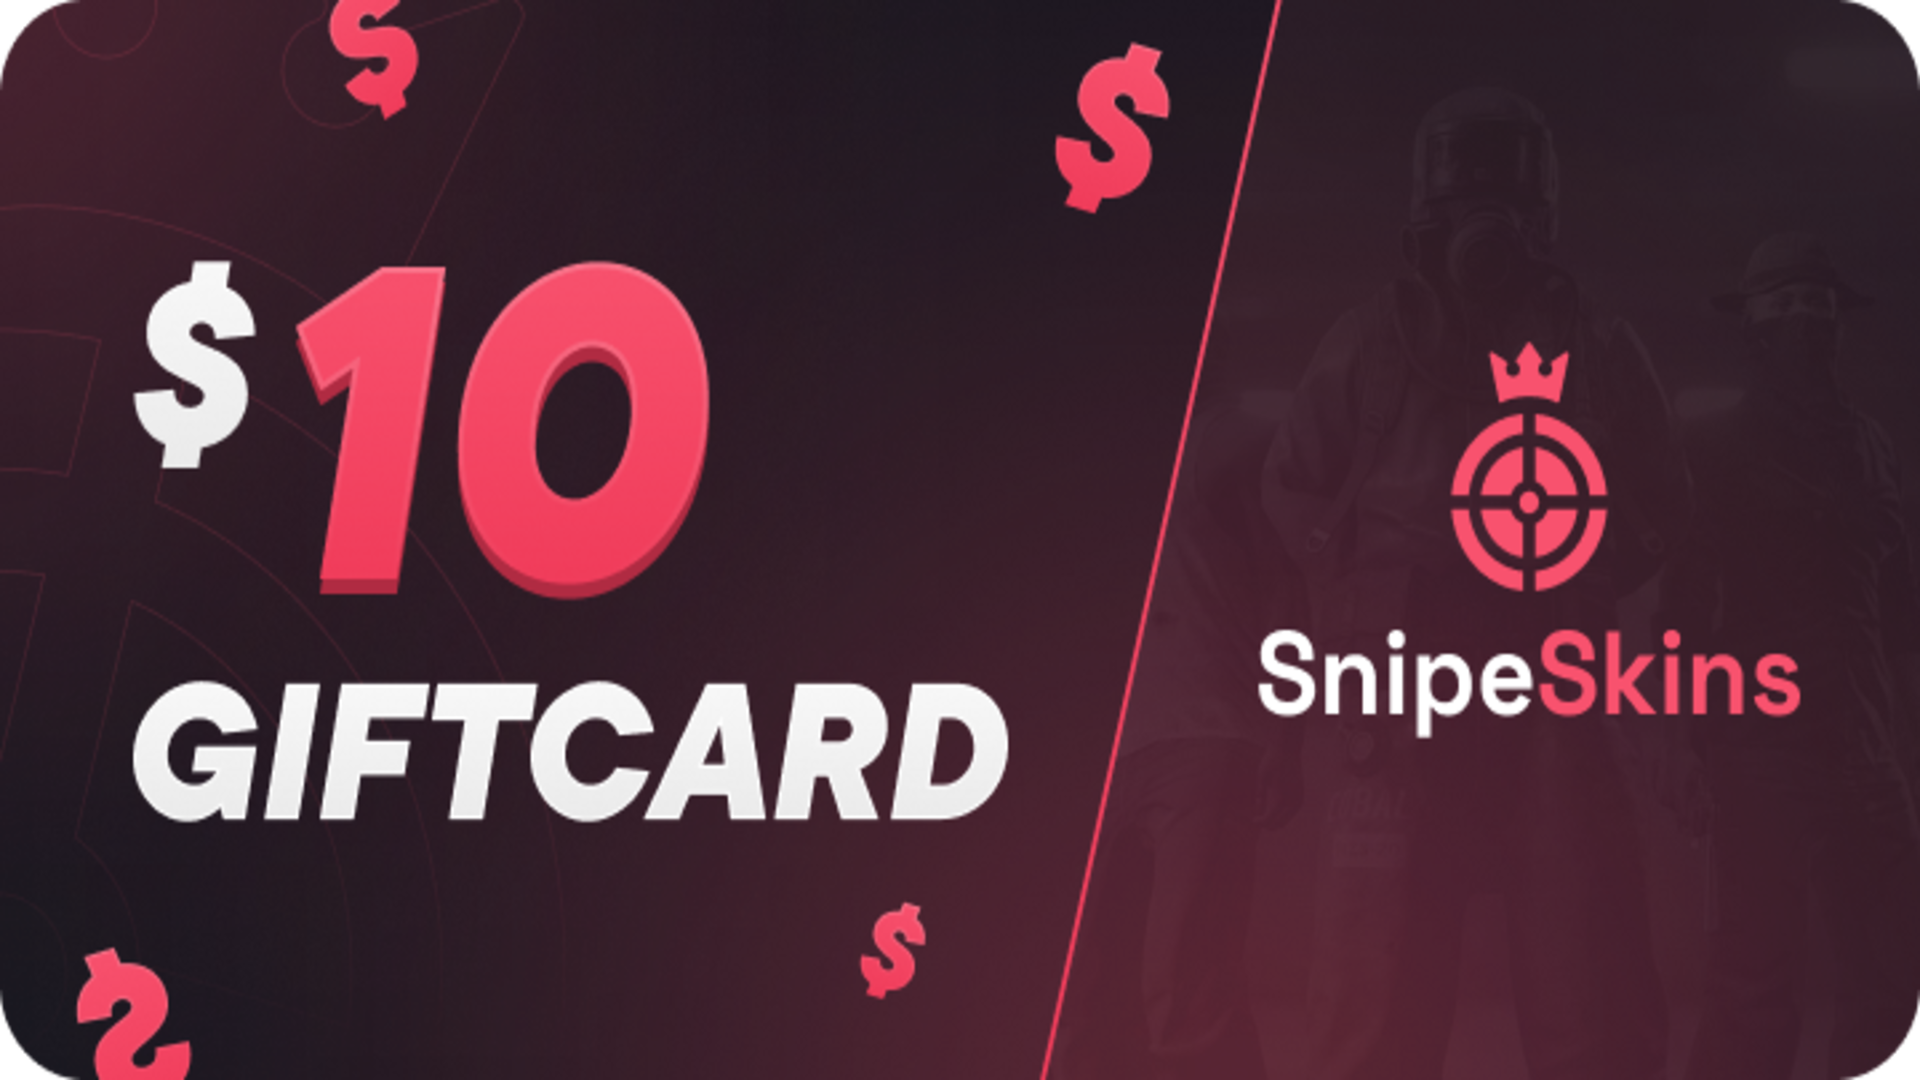 SnipeSkins $10 Gift Card 12.52 $